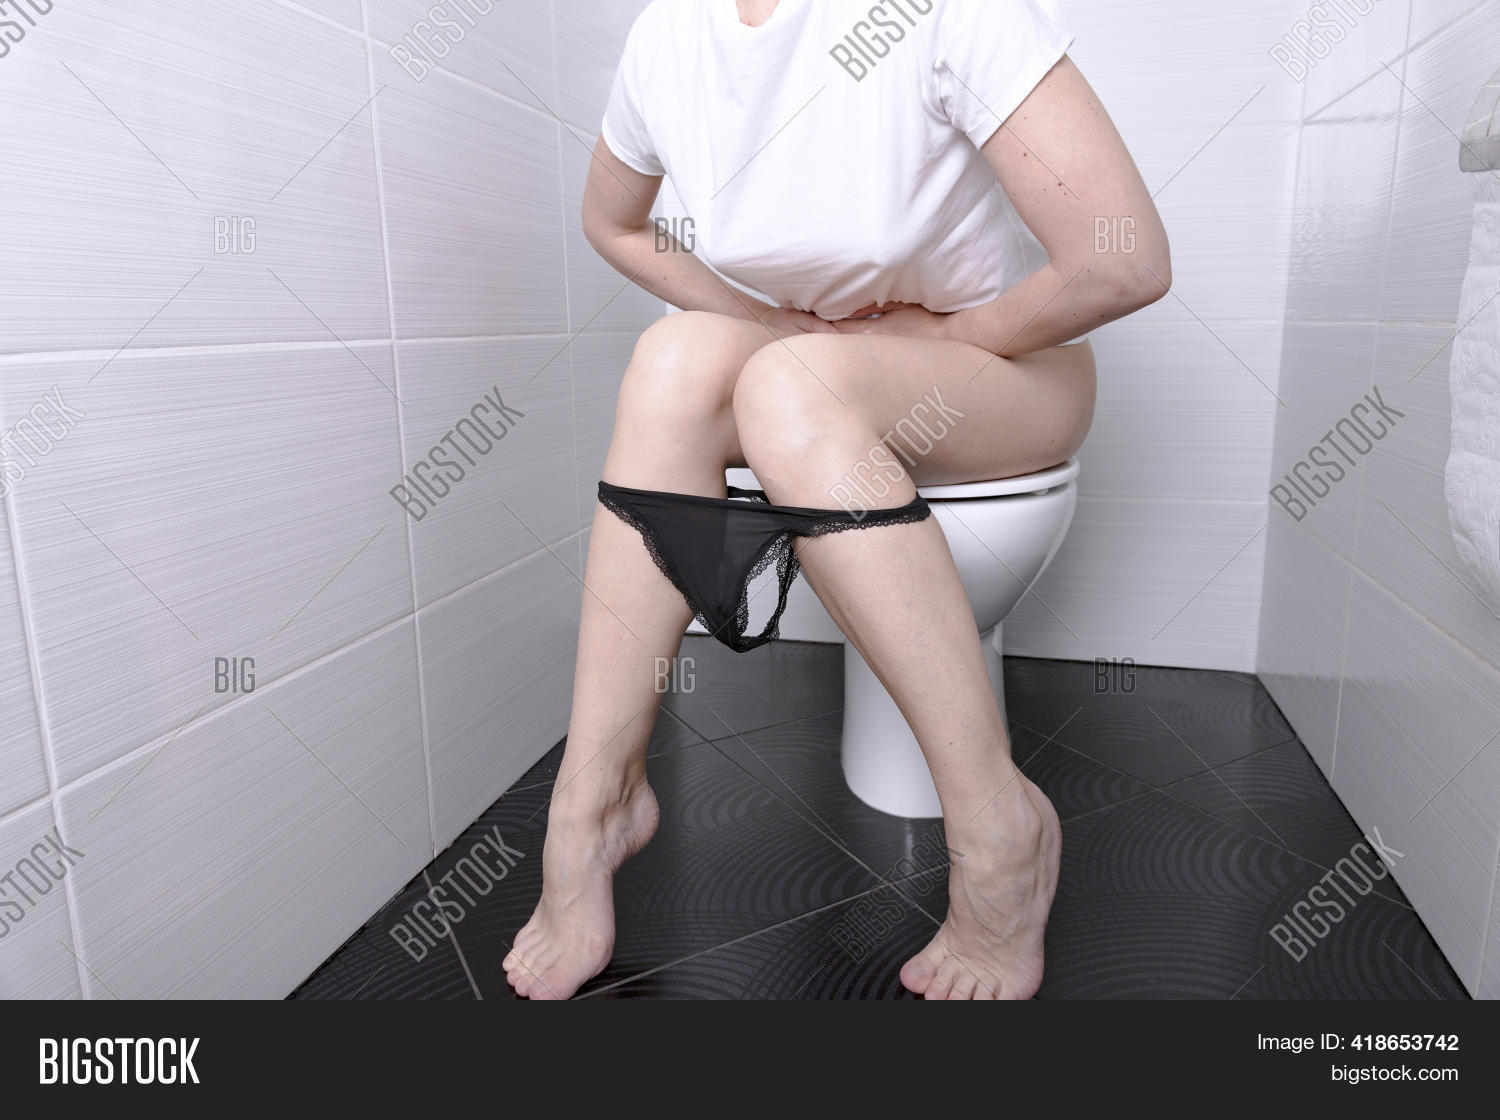 chris plamann share girl pissing in toilet photos